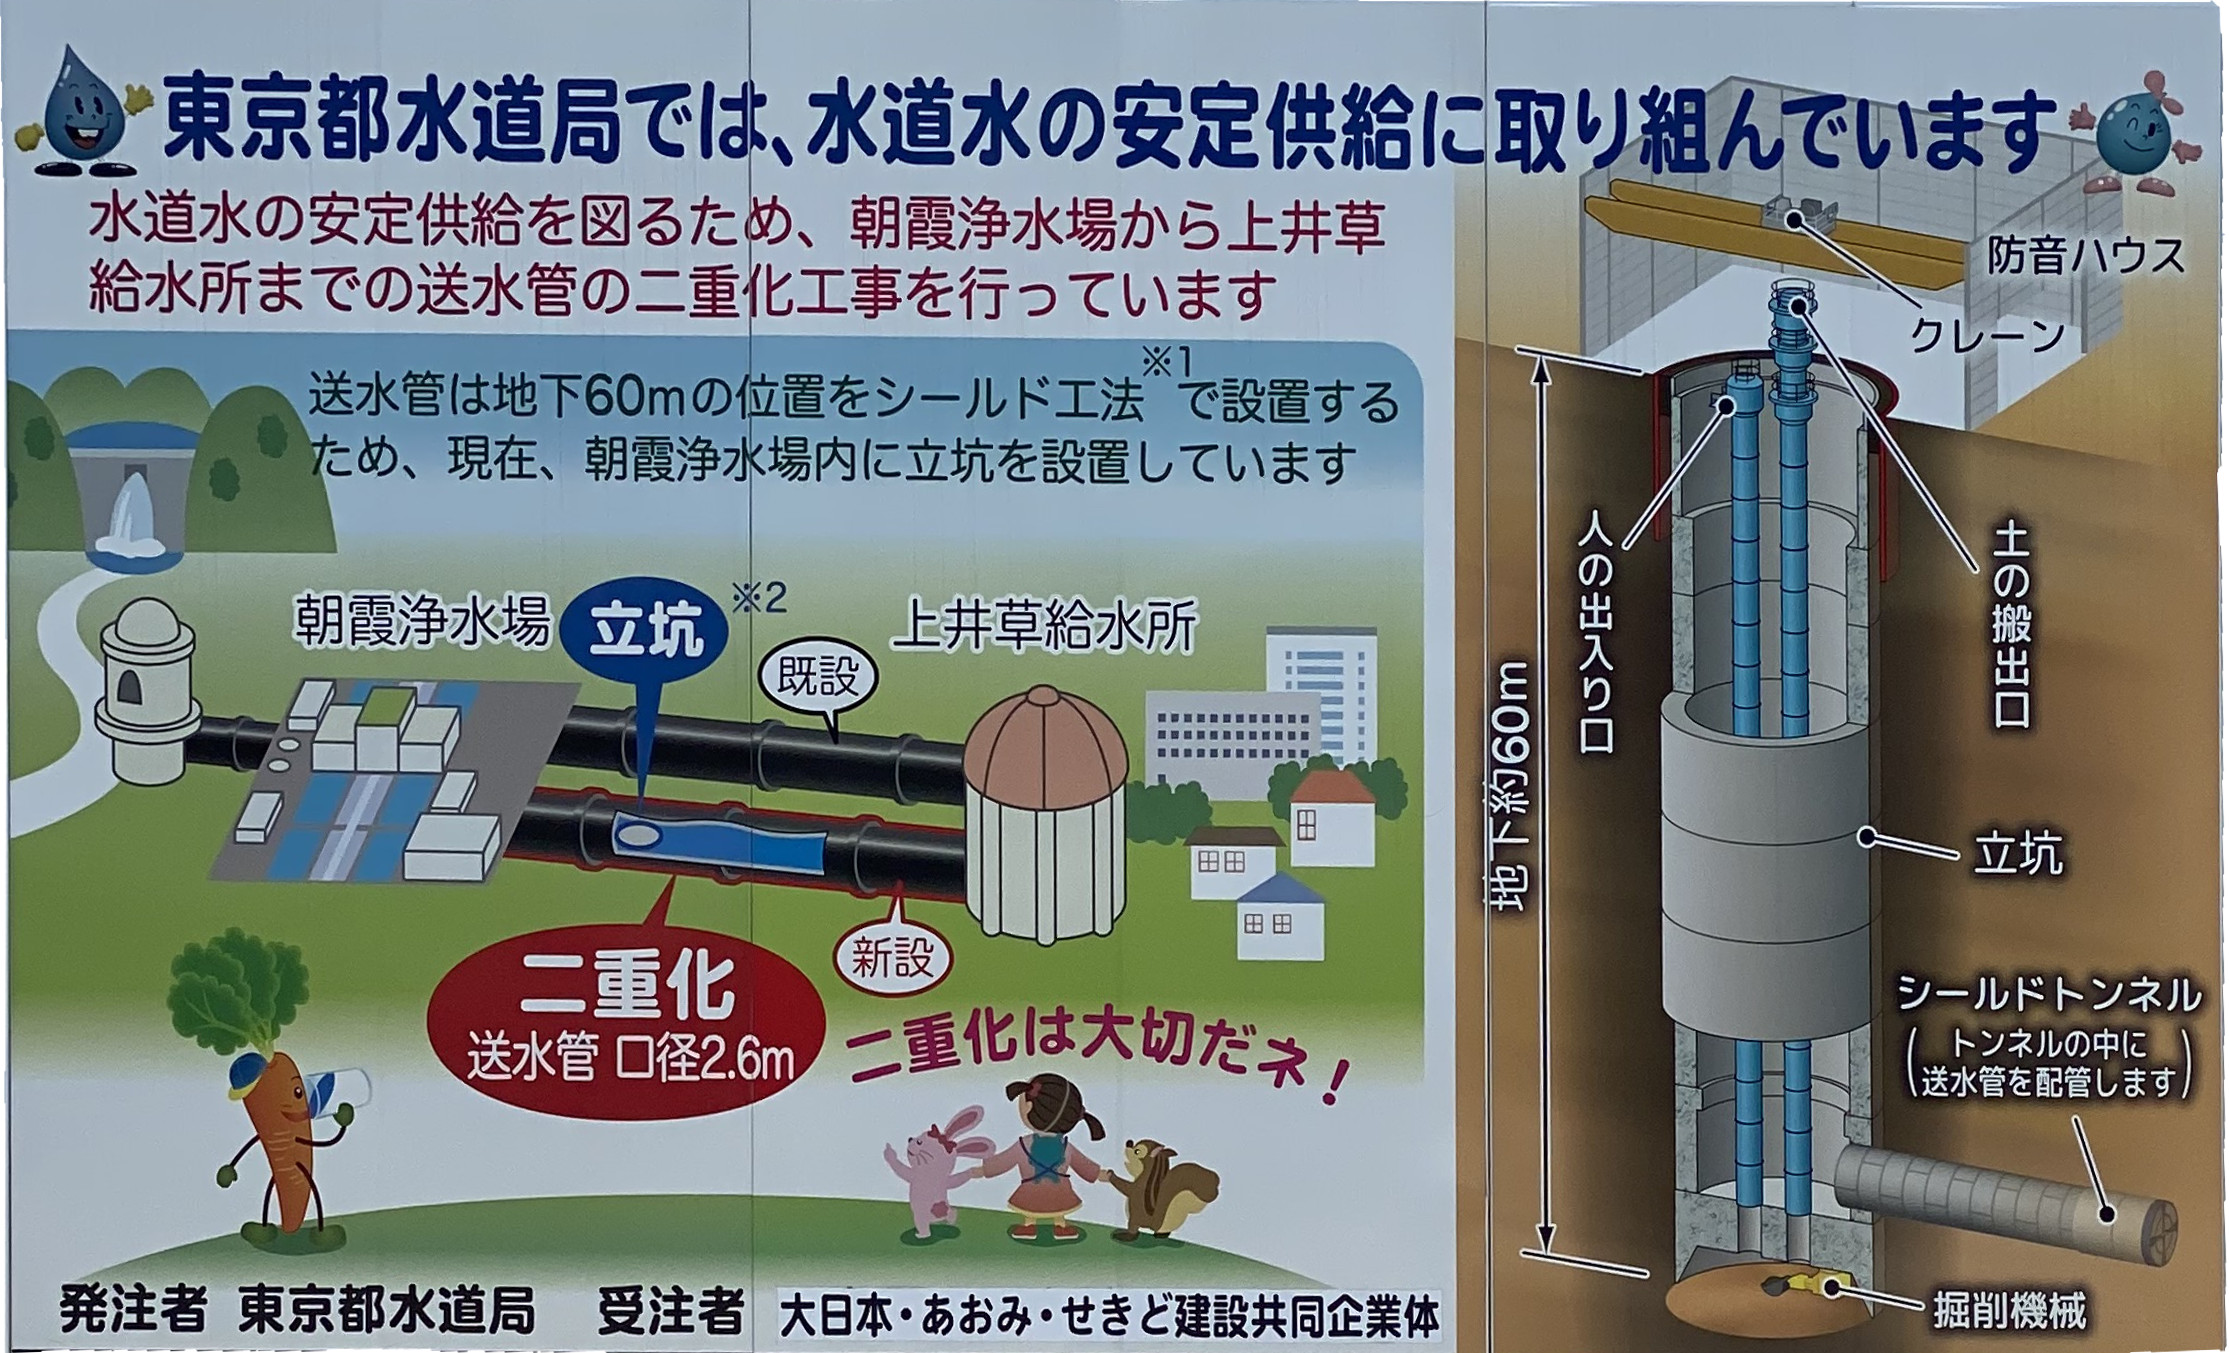 東京都水道局では、水道水の安定供給に
取り組んでいます。
